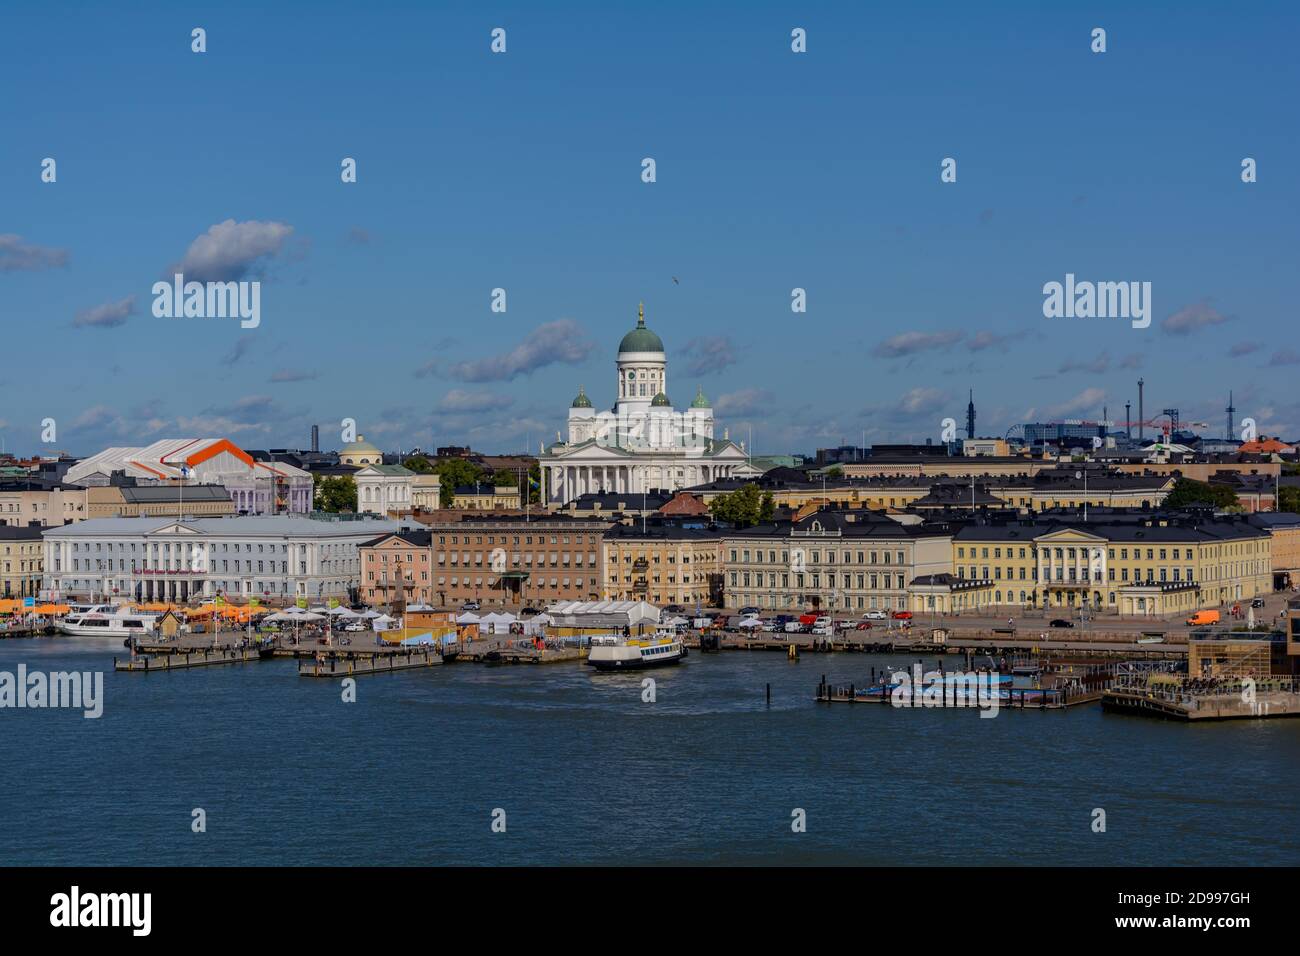 Il paesaggio urbano di Helsinki è stato girato dall'acqua con la cattedrale bianca di Helsinki Foto Stock